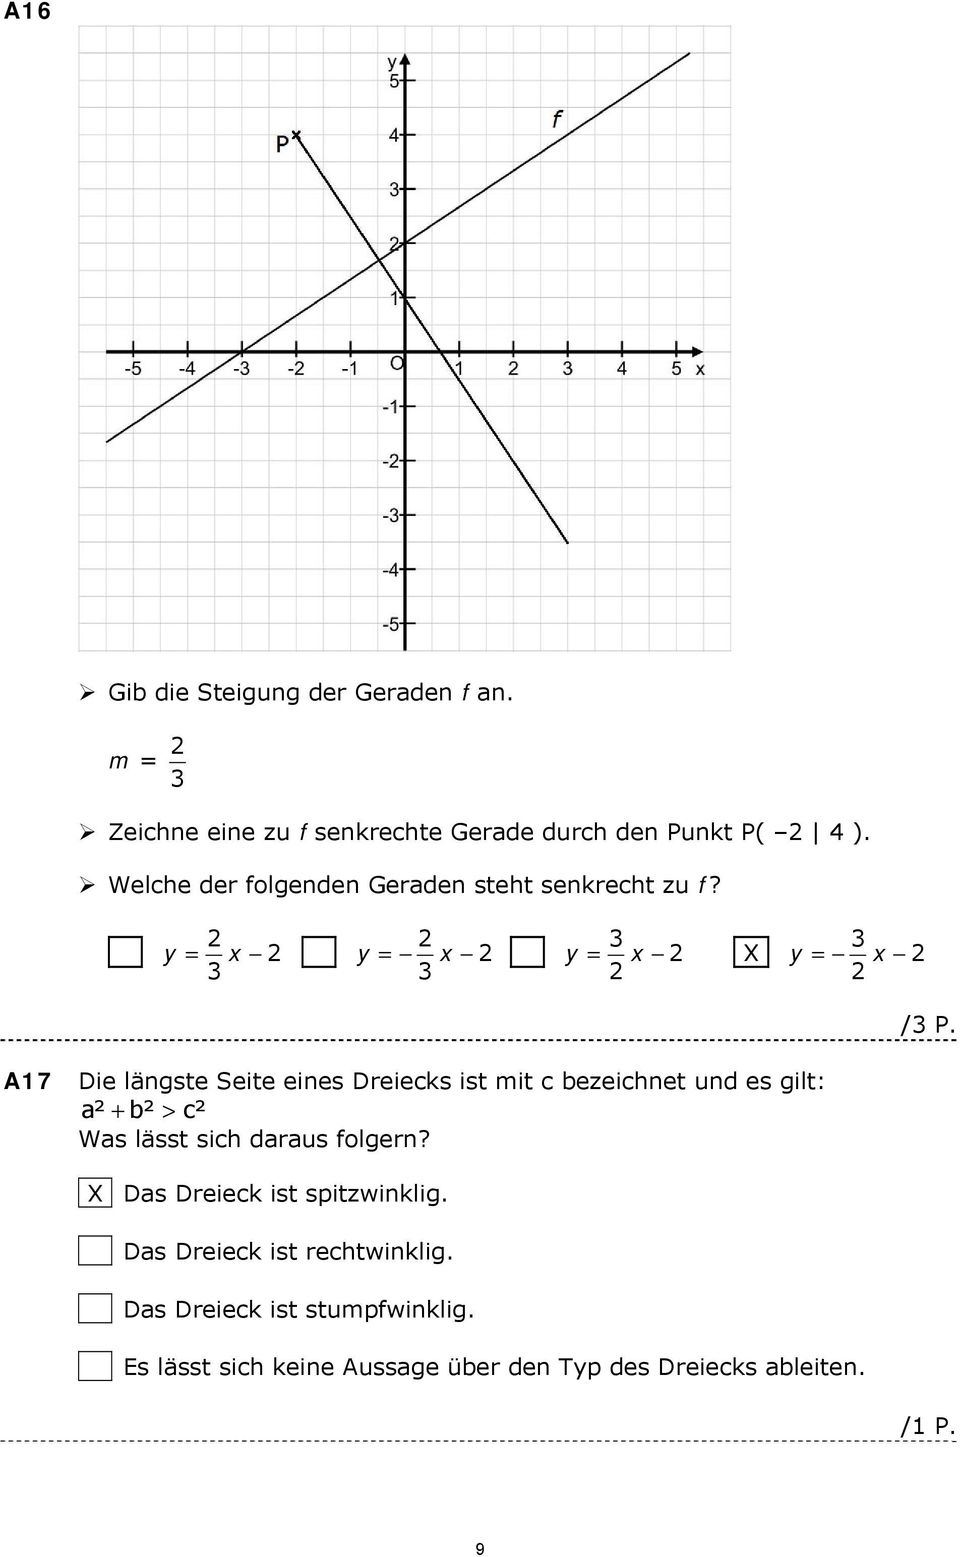 A17 Die längste Seite eines Dreiecks ist mit c bezeichnet und es gilt: a² + b² > c² Was lässt sich daraus folgern?